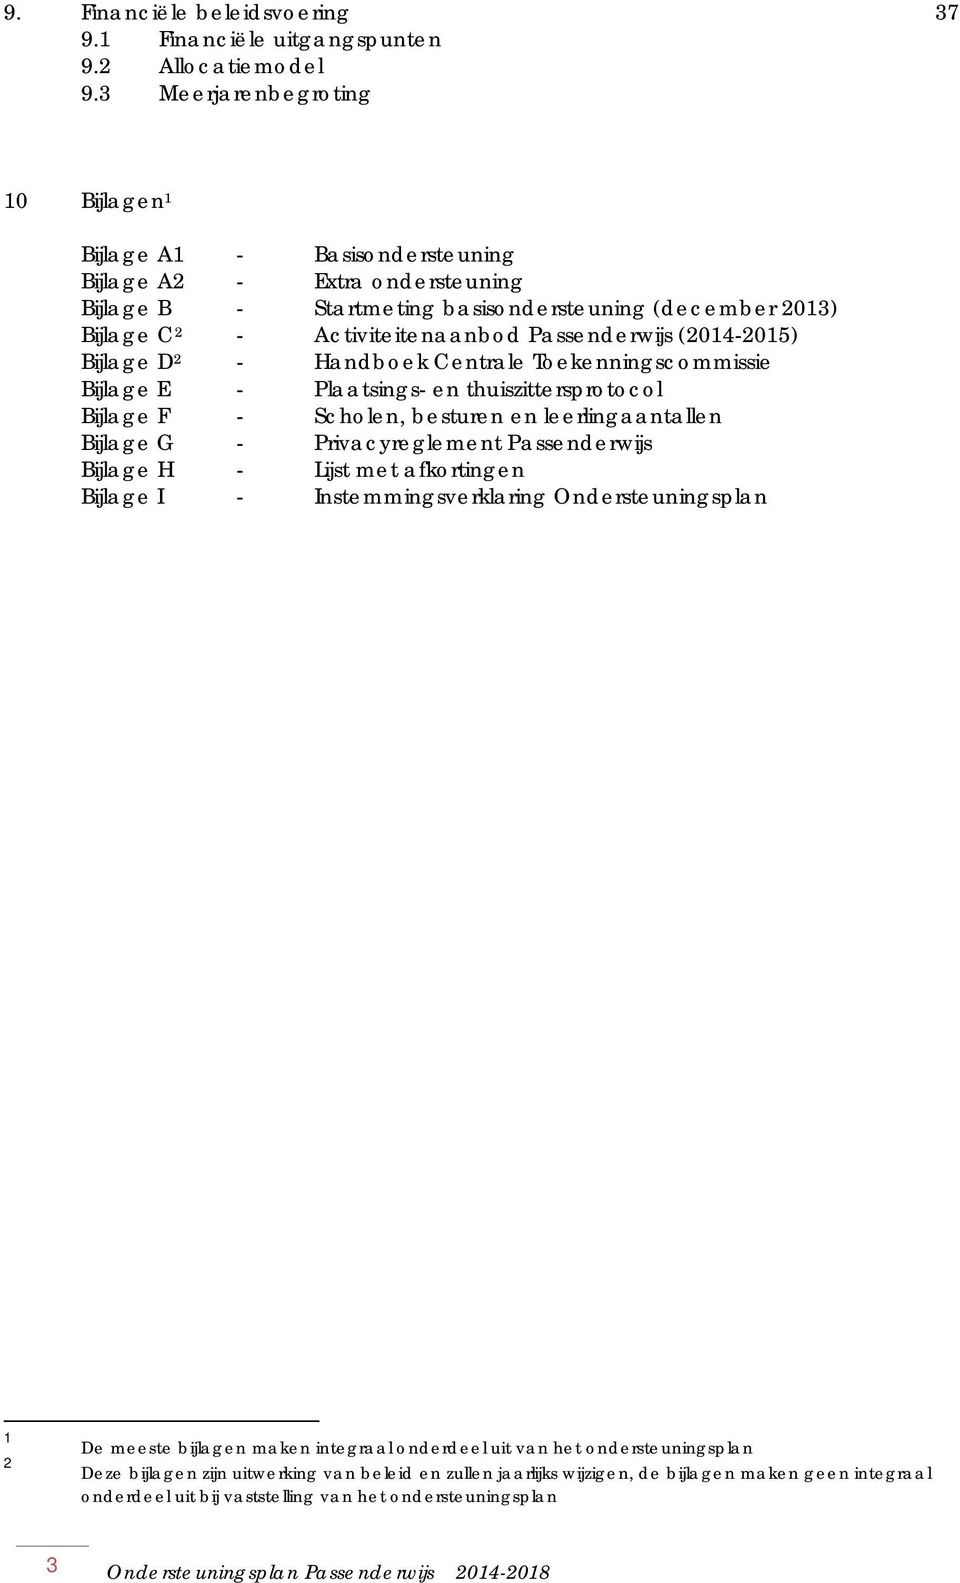 Passenderwijs (2014-2015) Bijlage D 2 - Handboek Centrale Toekenningscommissie Bijlage E - Plaatsings- en thuiszittersprotocol Bijlage F - Scholen, besturen en leerlingaantallen Bijlage G -